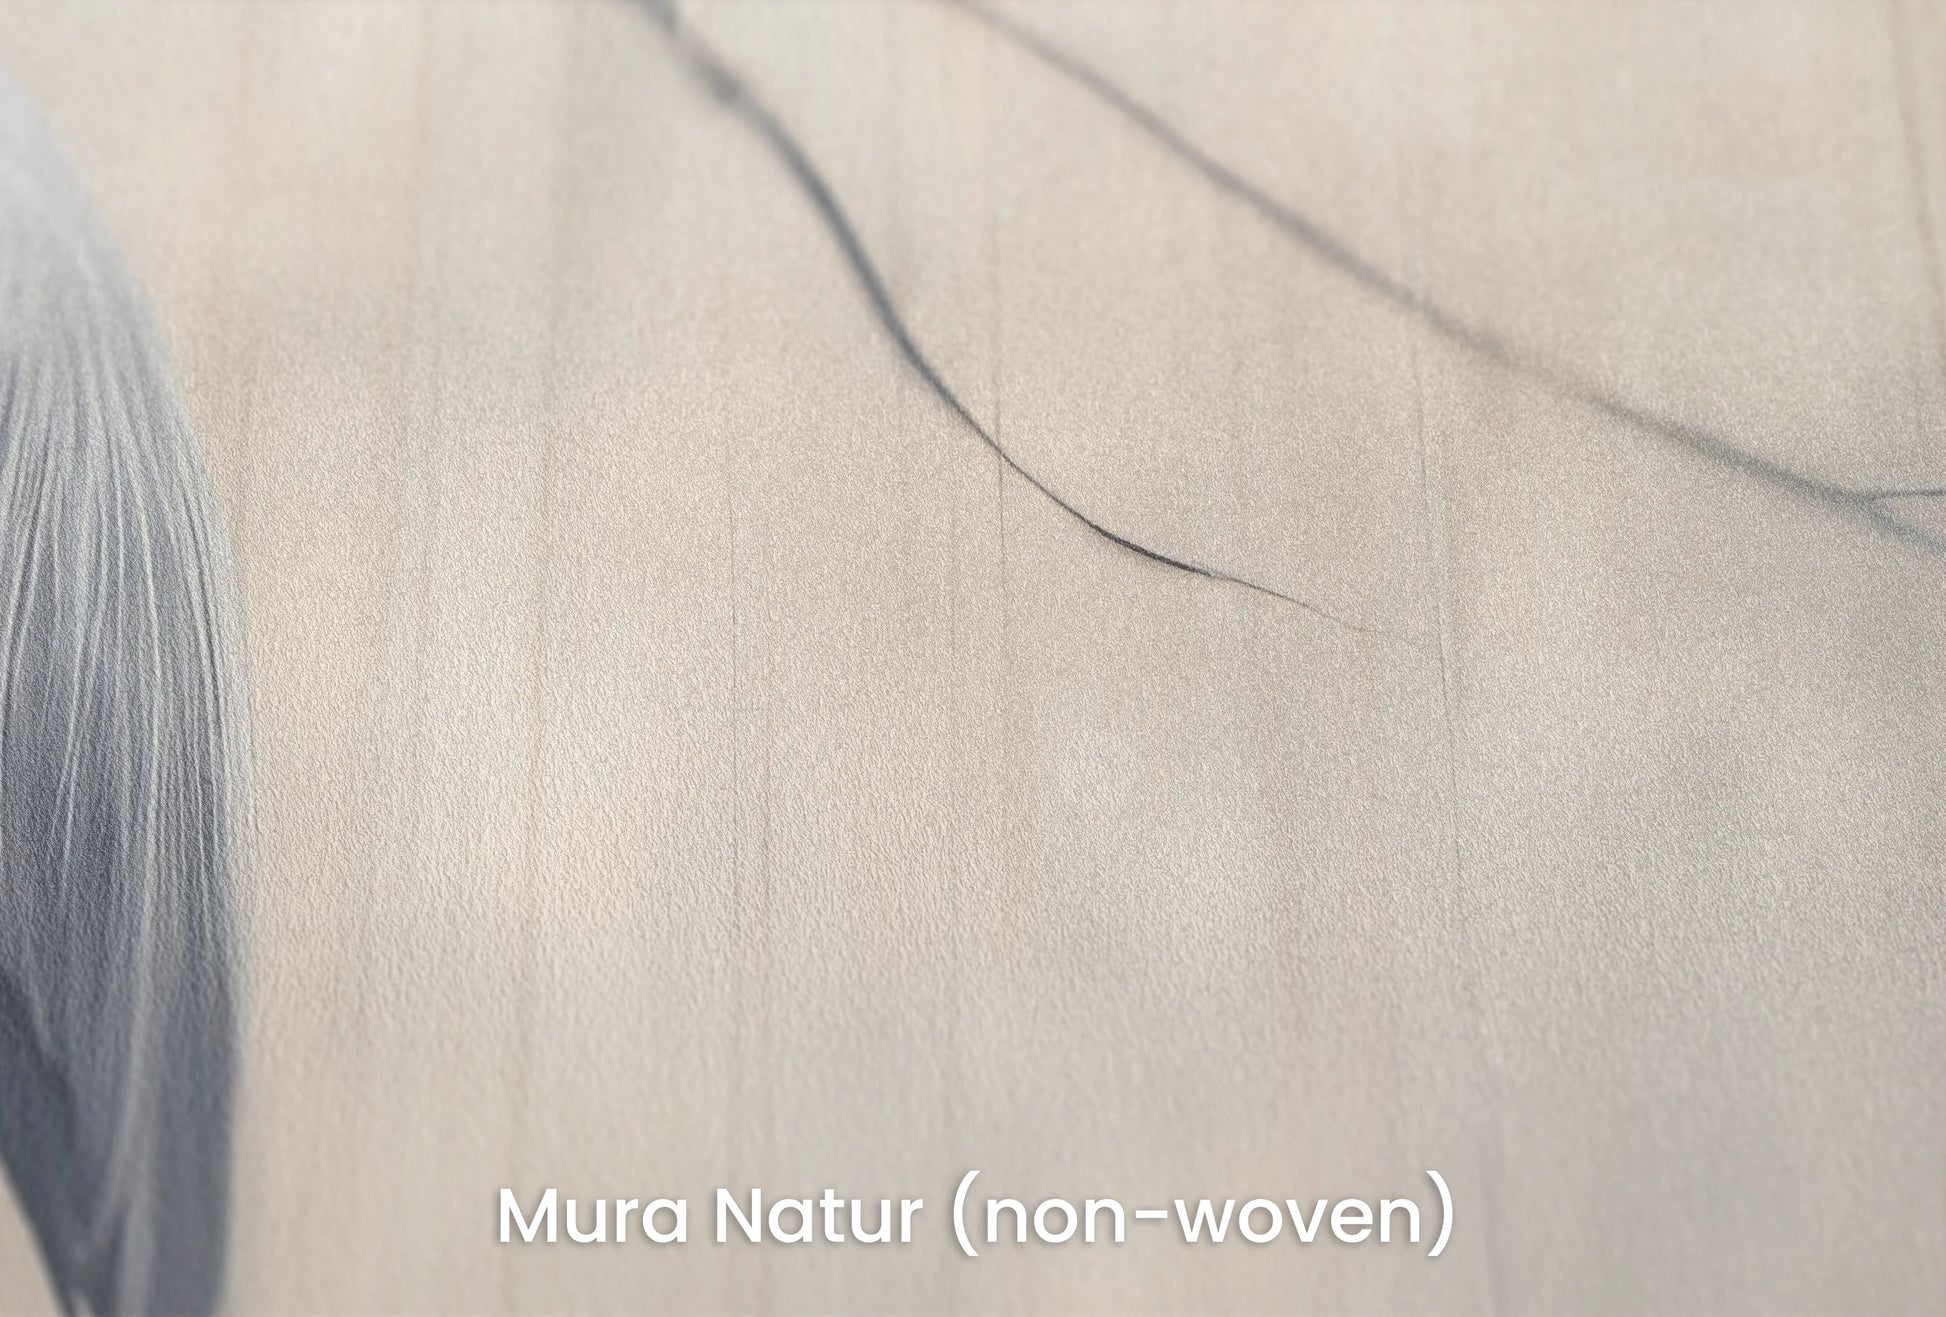 Zbliżenie na artystyczną fototapetę o nazwie Heron's Realm na podłożu Mura Natur (non-woven) - naturalne i ekologiczne podłoże.